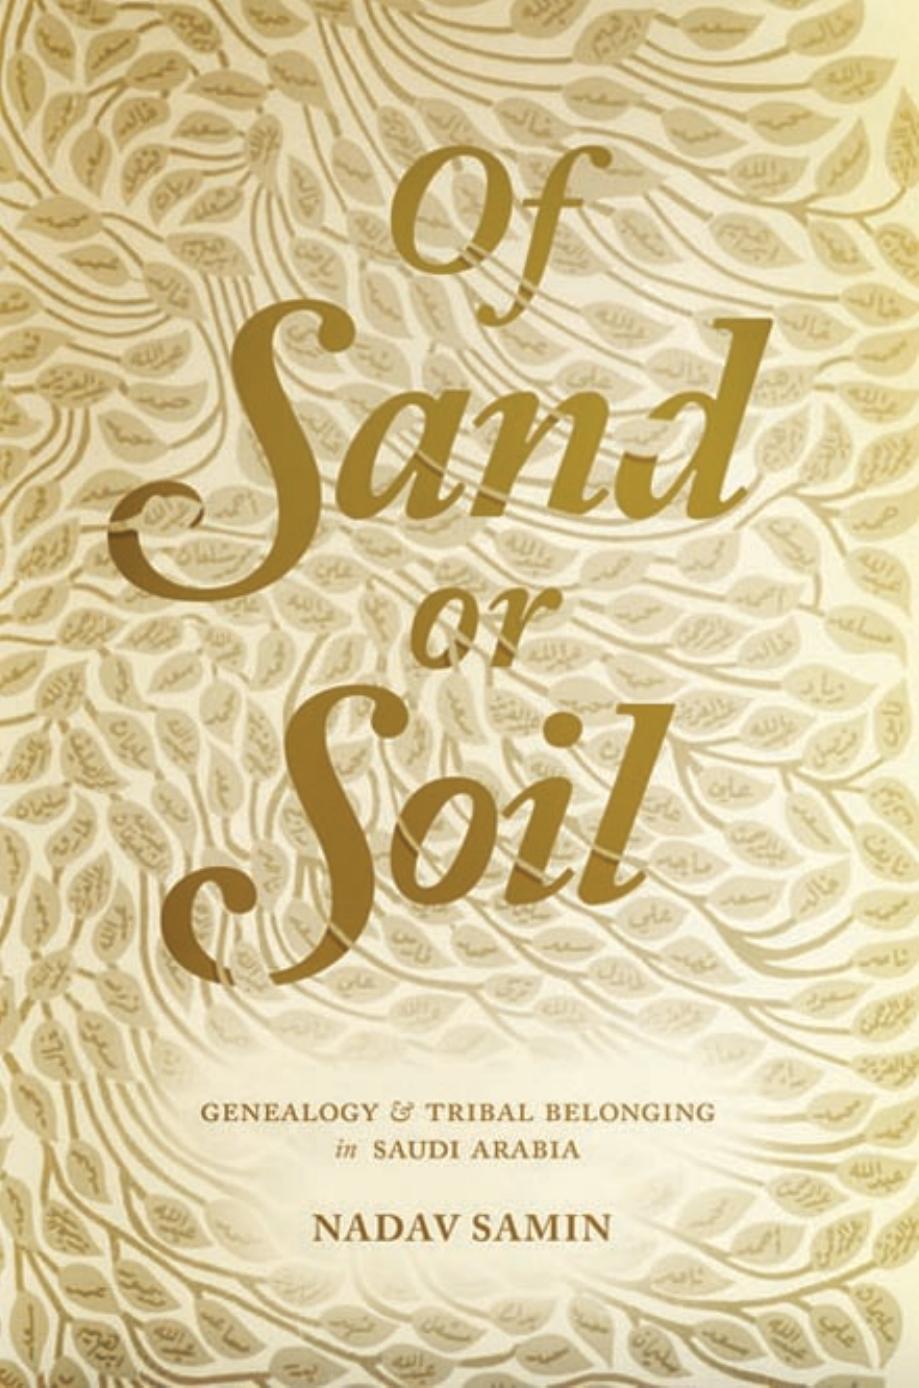 Of Sand or Soil by Samin Nadav